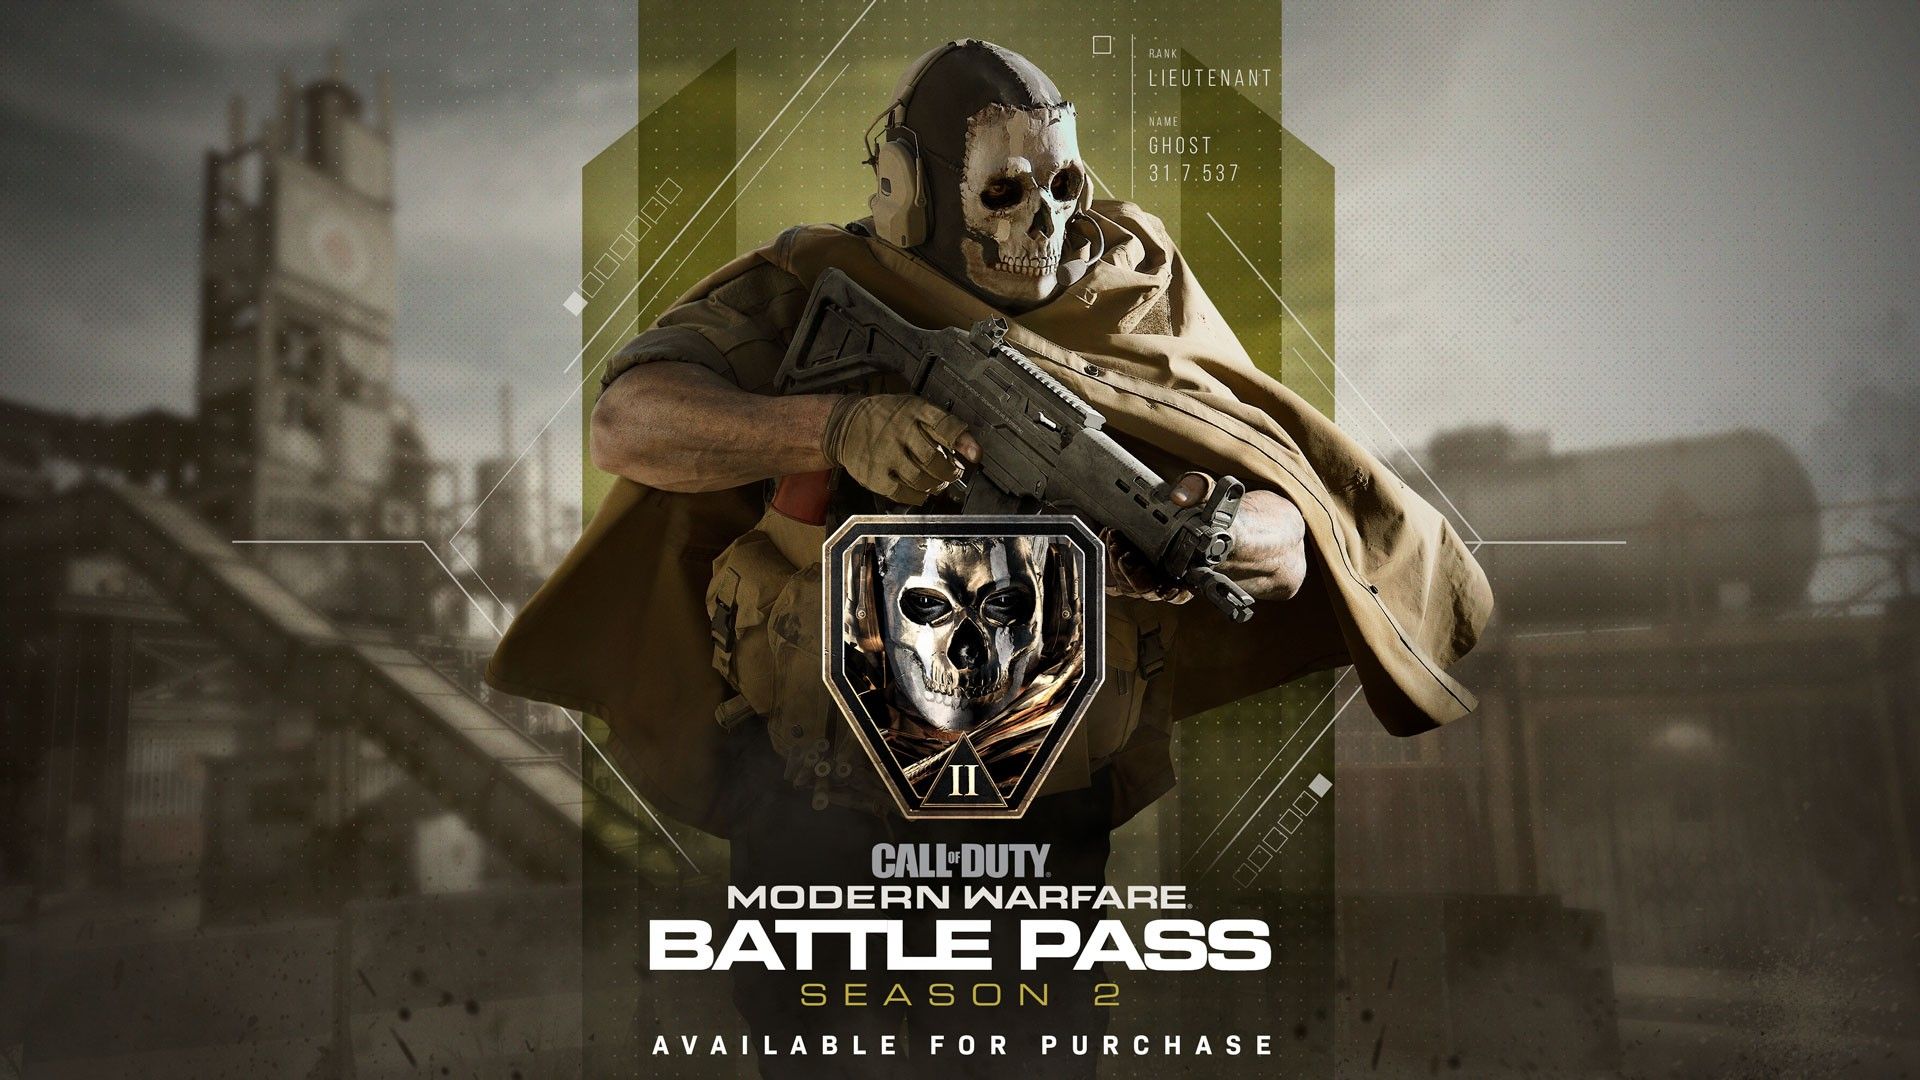 cal of duty modern warfare season 2 battle pass promo